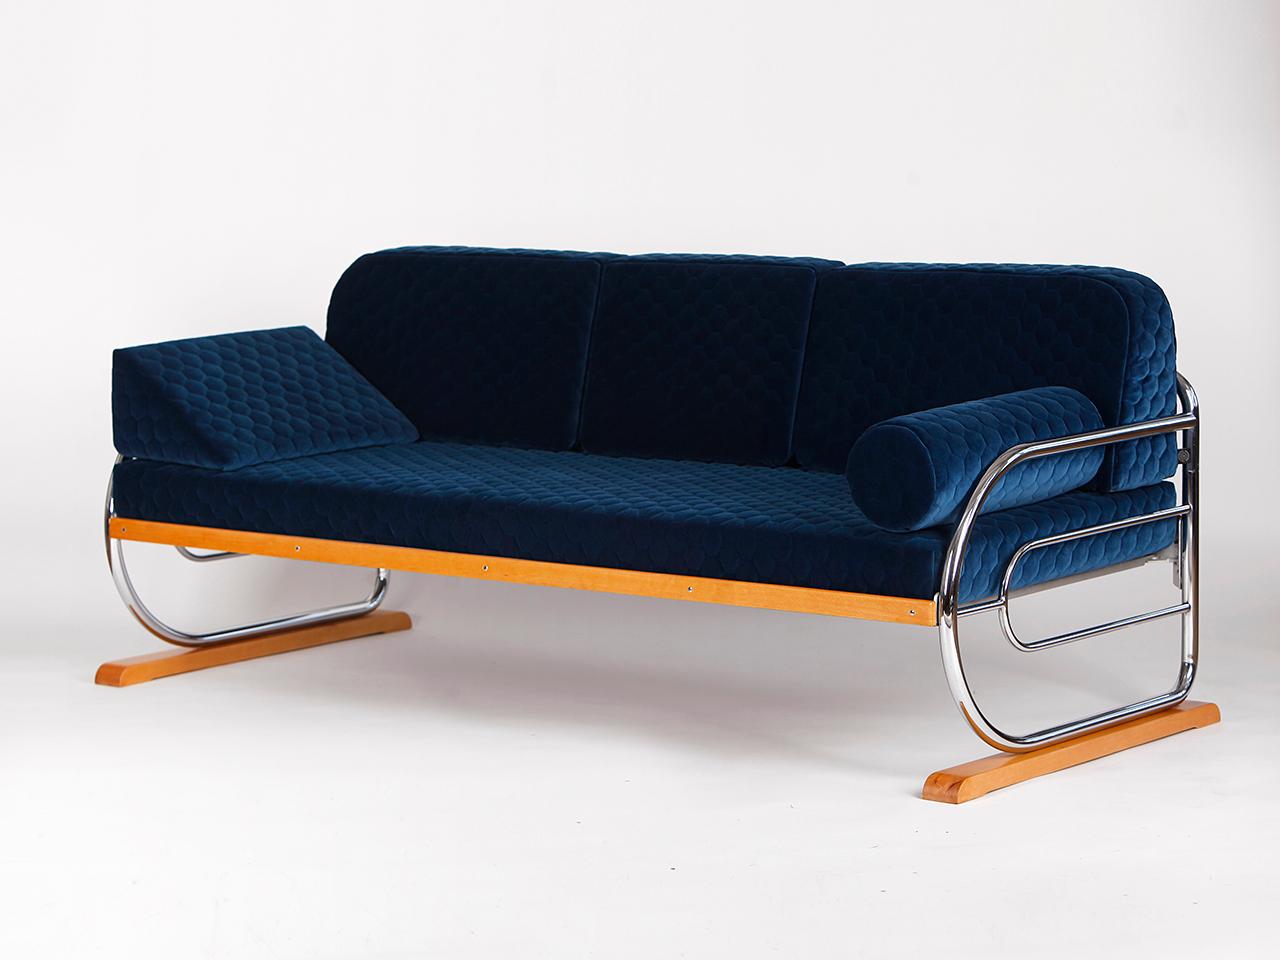 Diese originelle Couch oder Liege wurde von Hynek Gottwald in den 1930er Jahren in Prag hergestellt. Die Chromplatte wurde poliert und die Holzteile wurden neu lackiert. Die Matratze ist aus massiver Kokosfaser gefertigt. 
Er wurde vollständig